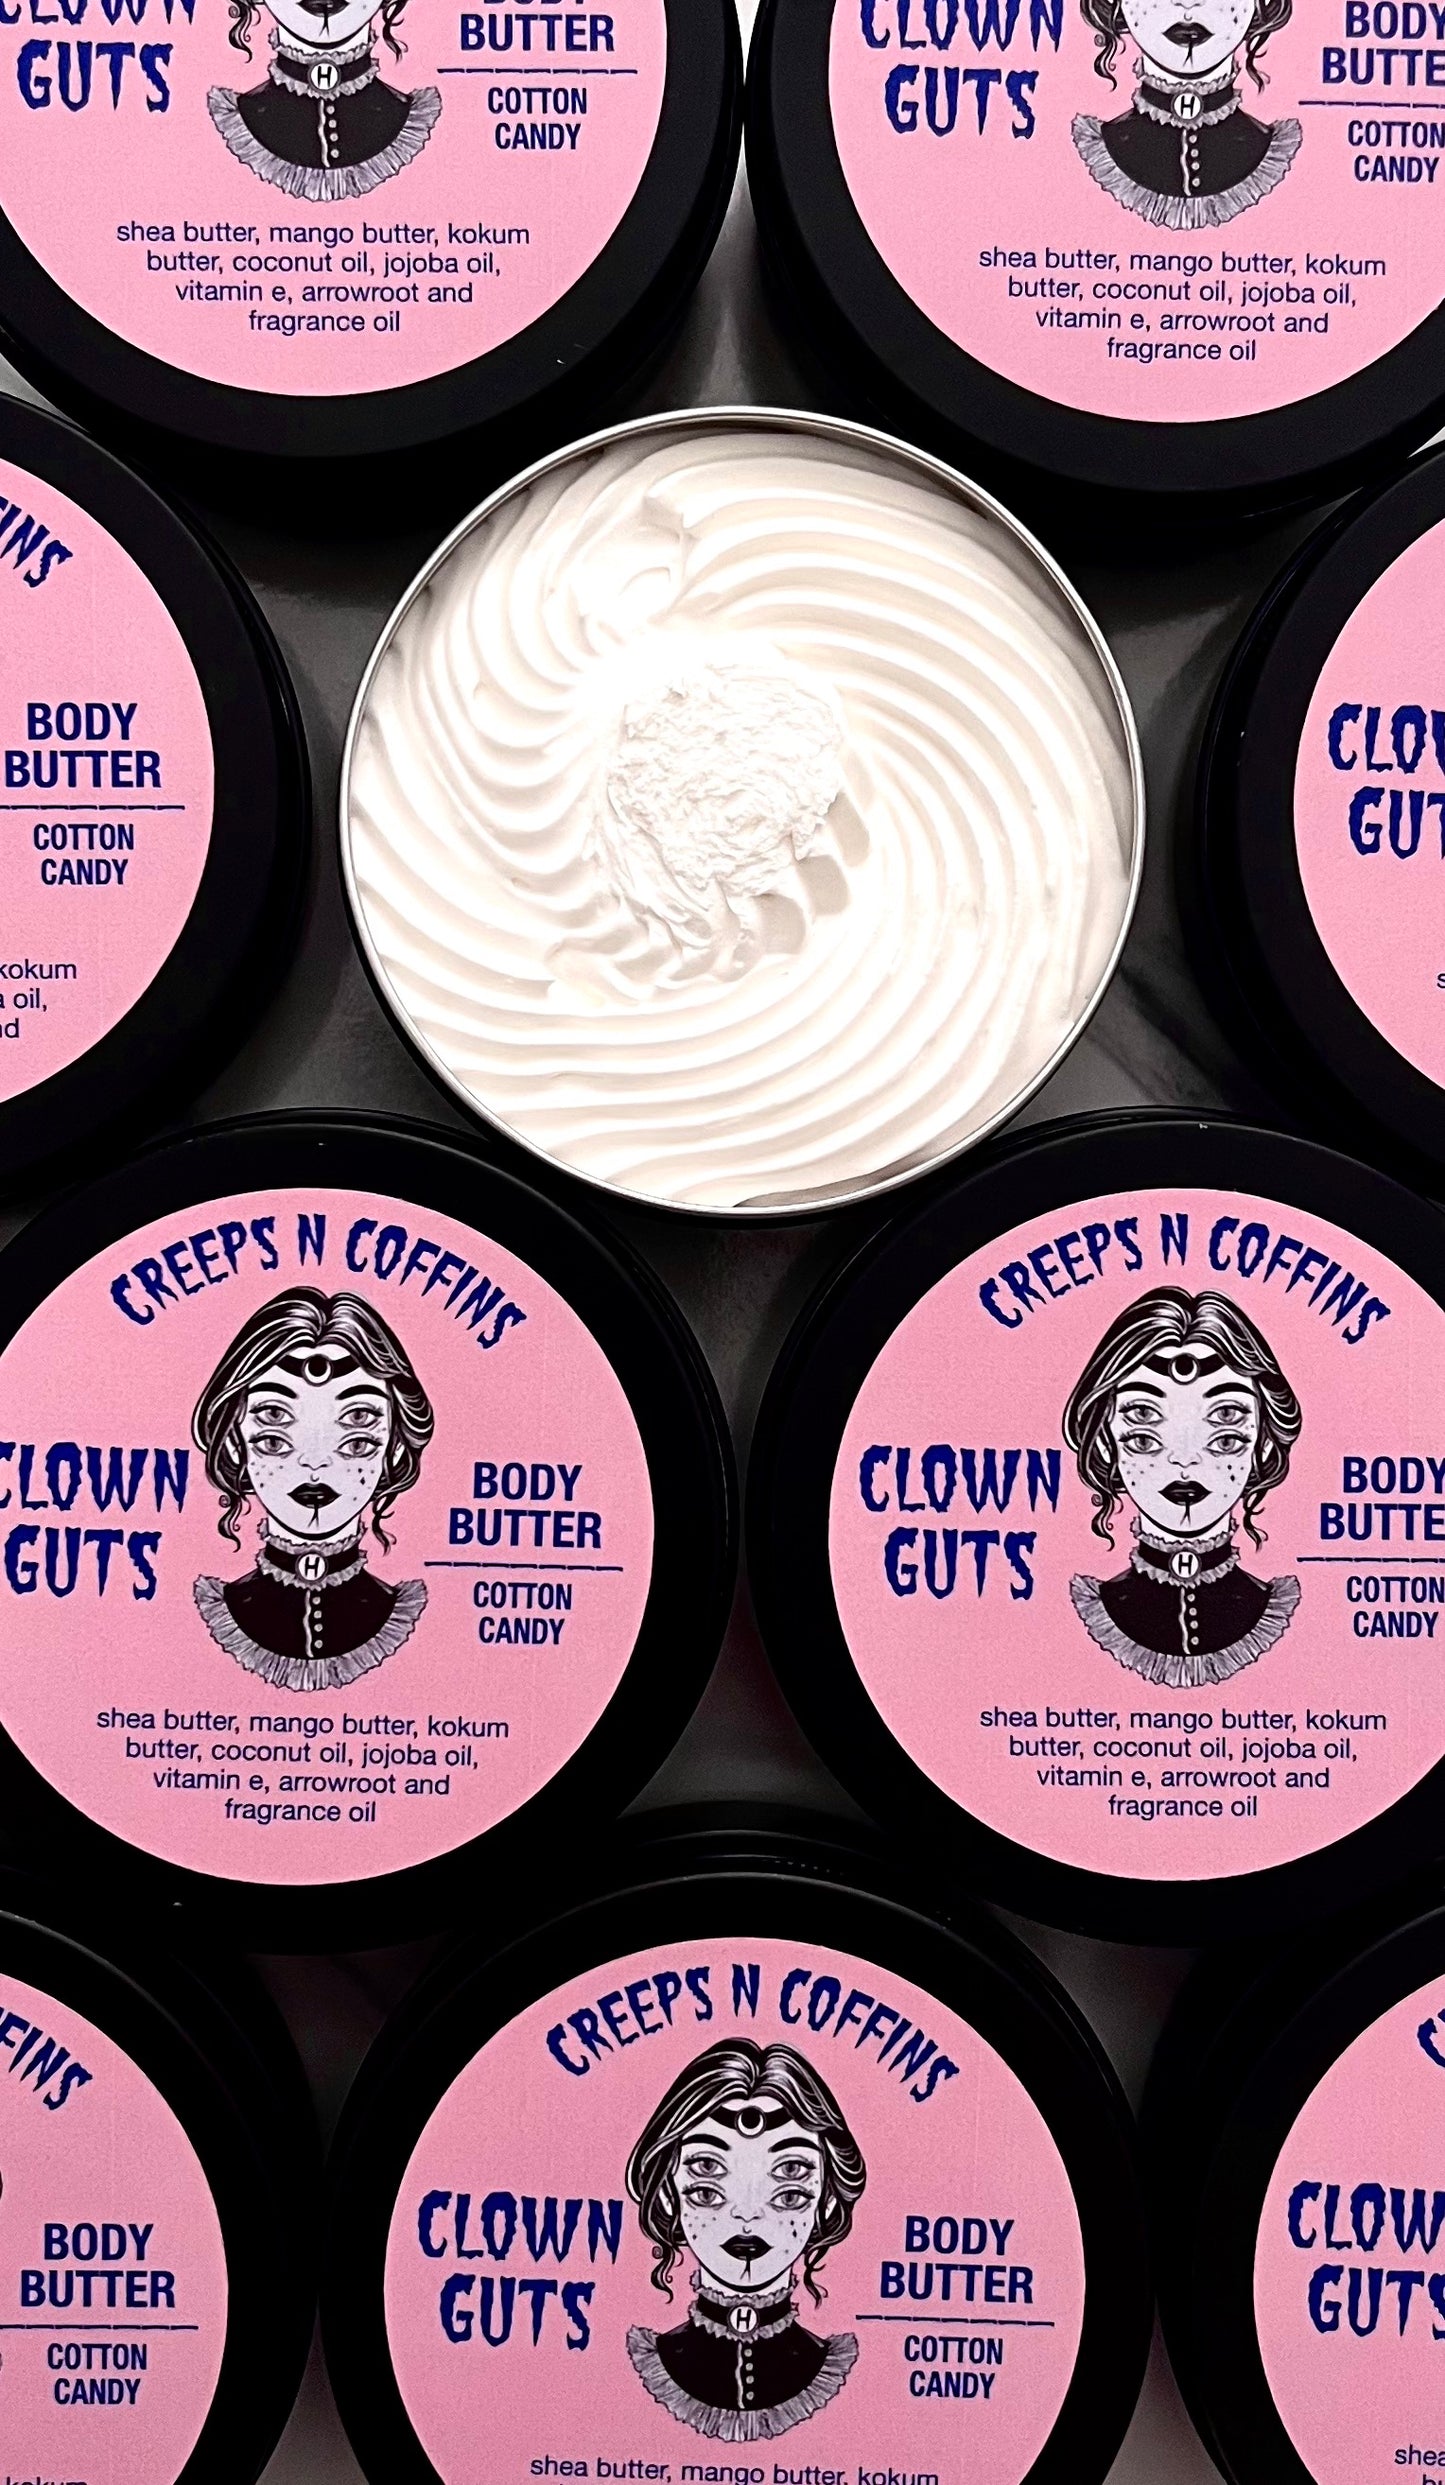 Clown Guts (cotton candy) Body Butter